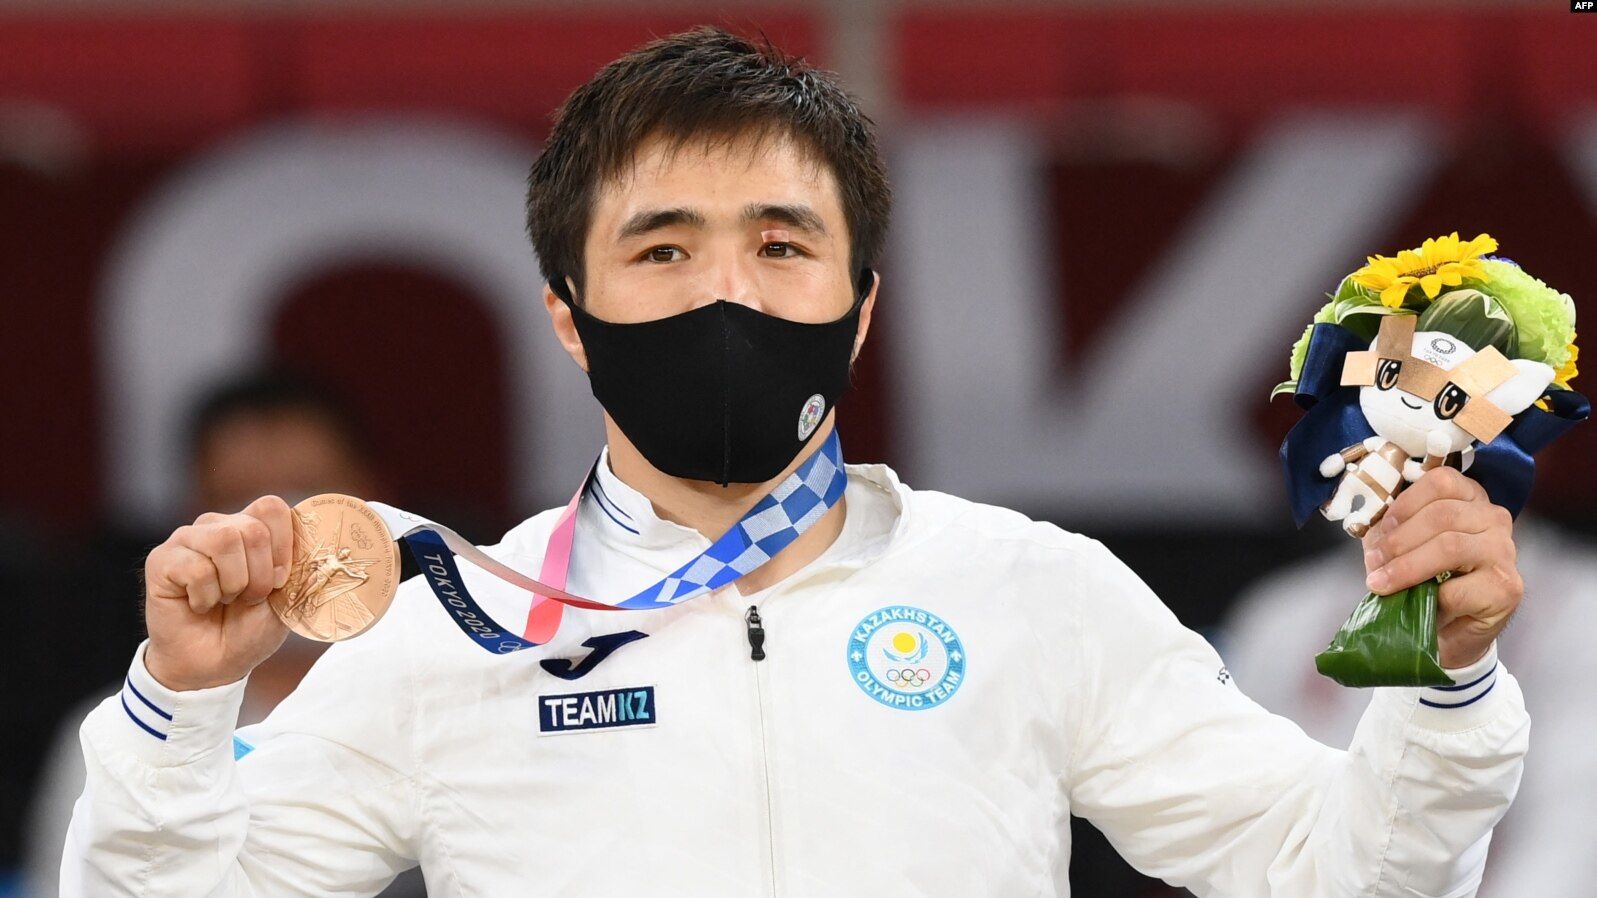 Дзюдоист Сметов завоевал первую медаль для Казахстана на Олимпиаде в Токио 